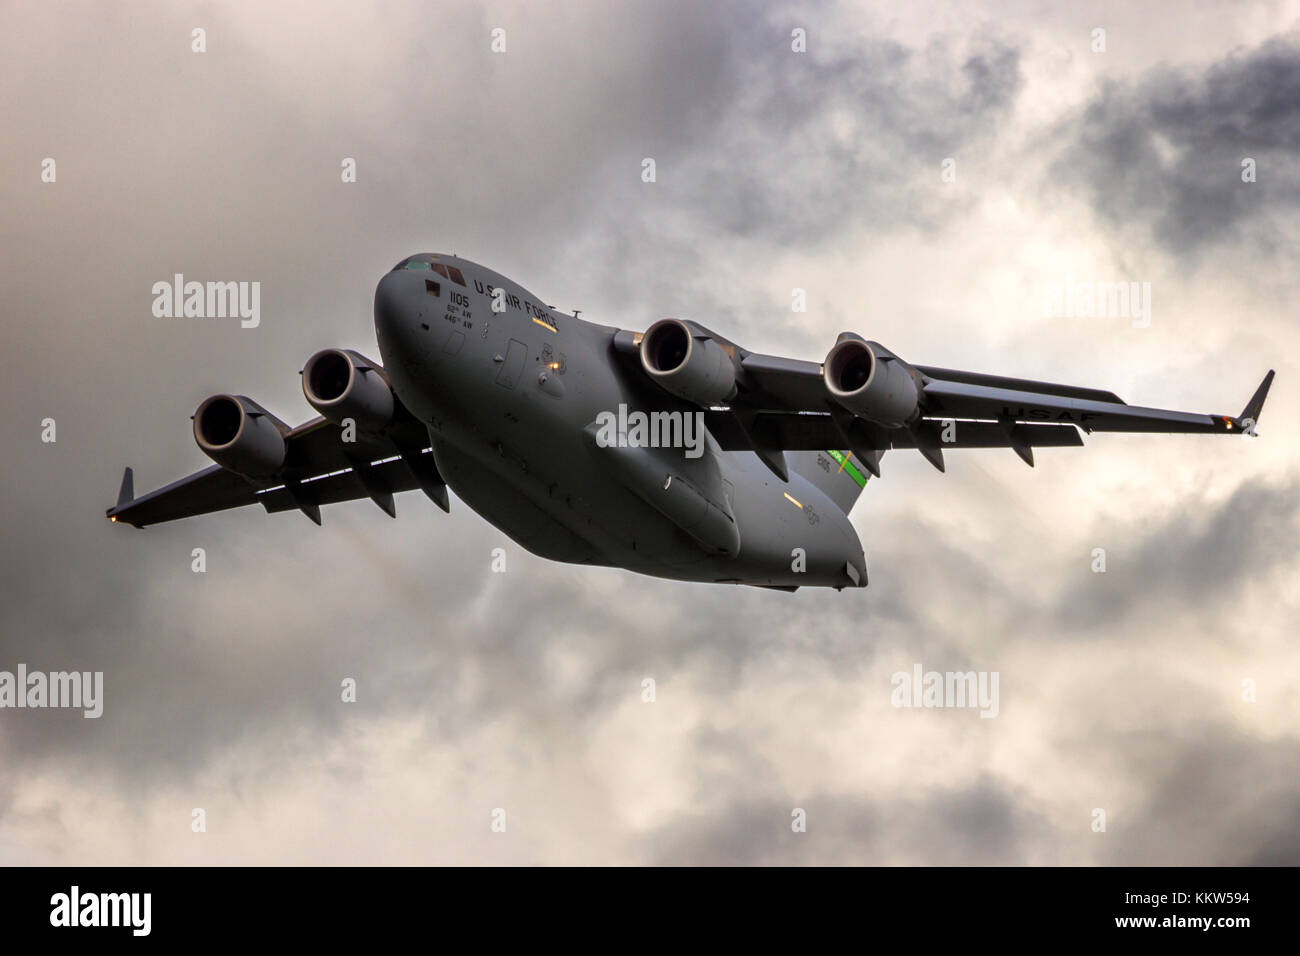 Leeuwarden, Niederlande - 5. Mai 2015: US Air Force Boeing C-17 Globemaster III Transport Flugzeug von Leeuwarden Airbase. Stockfoto